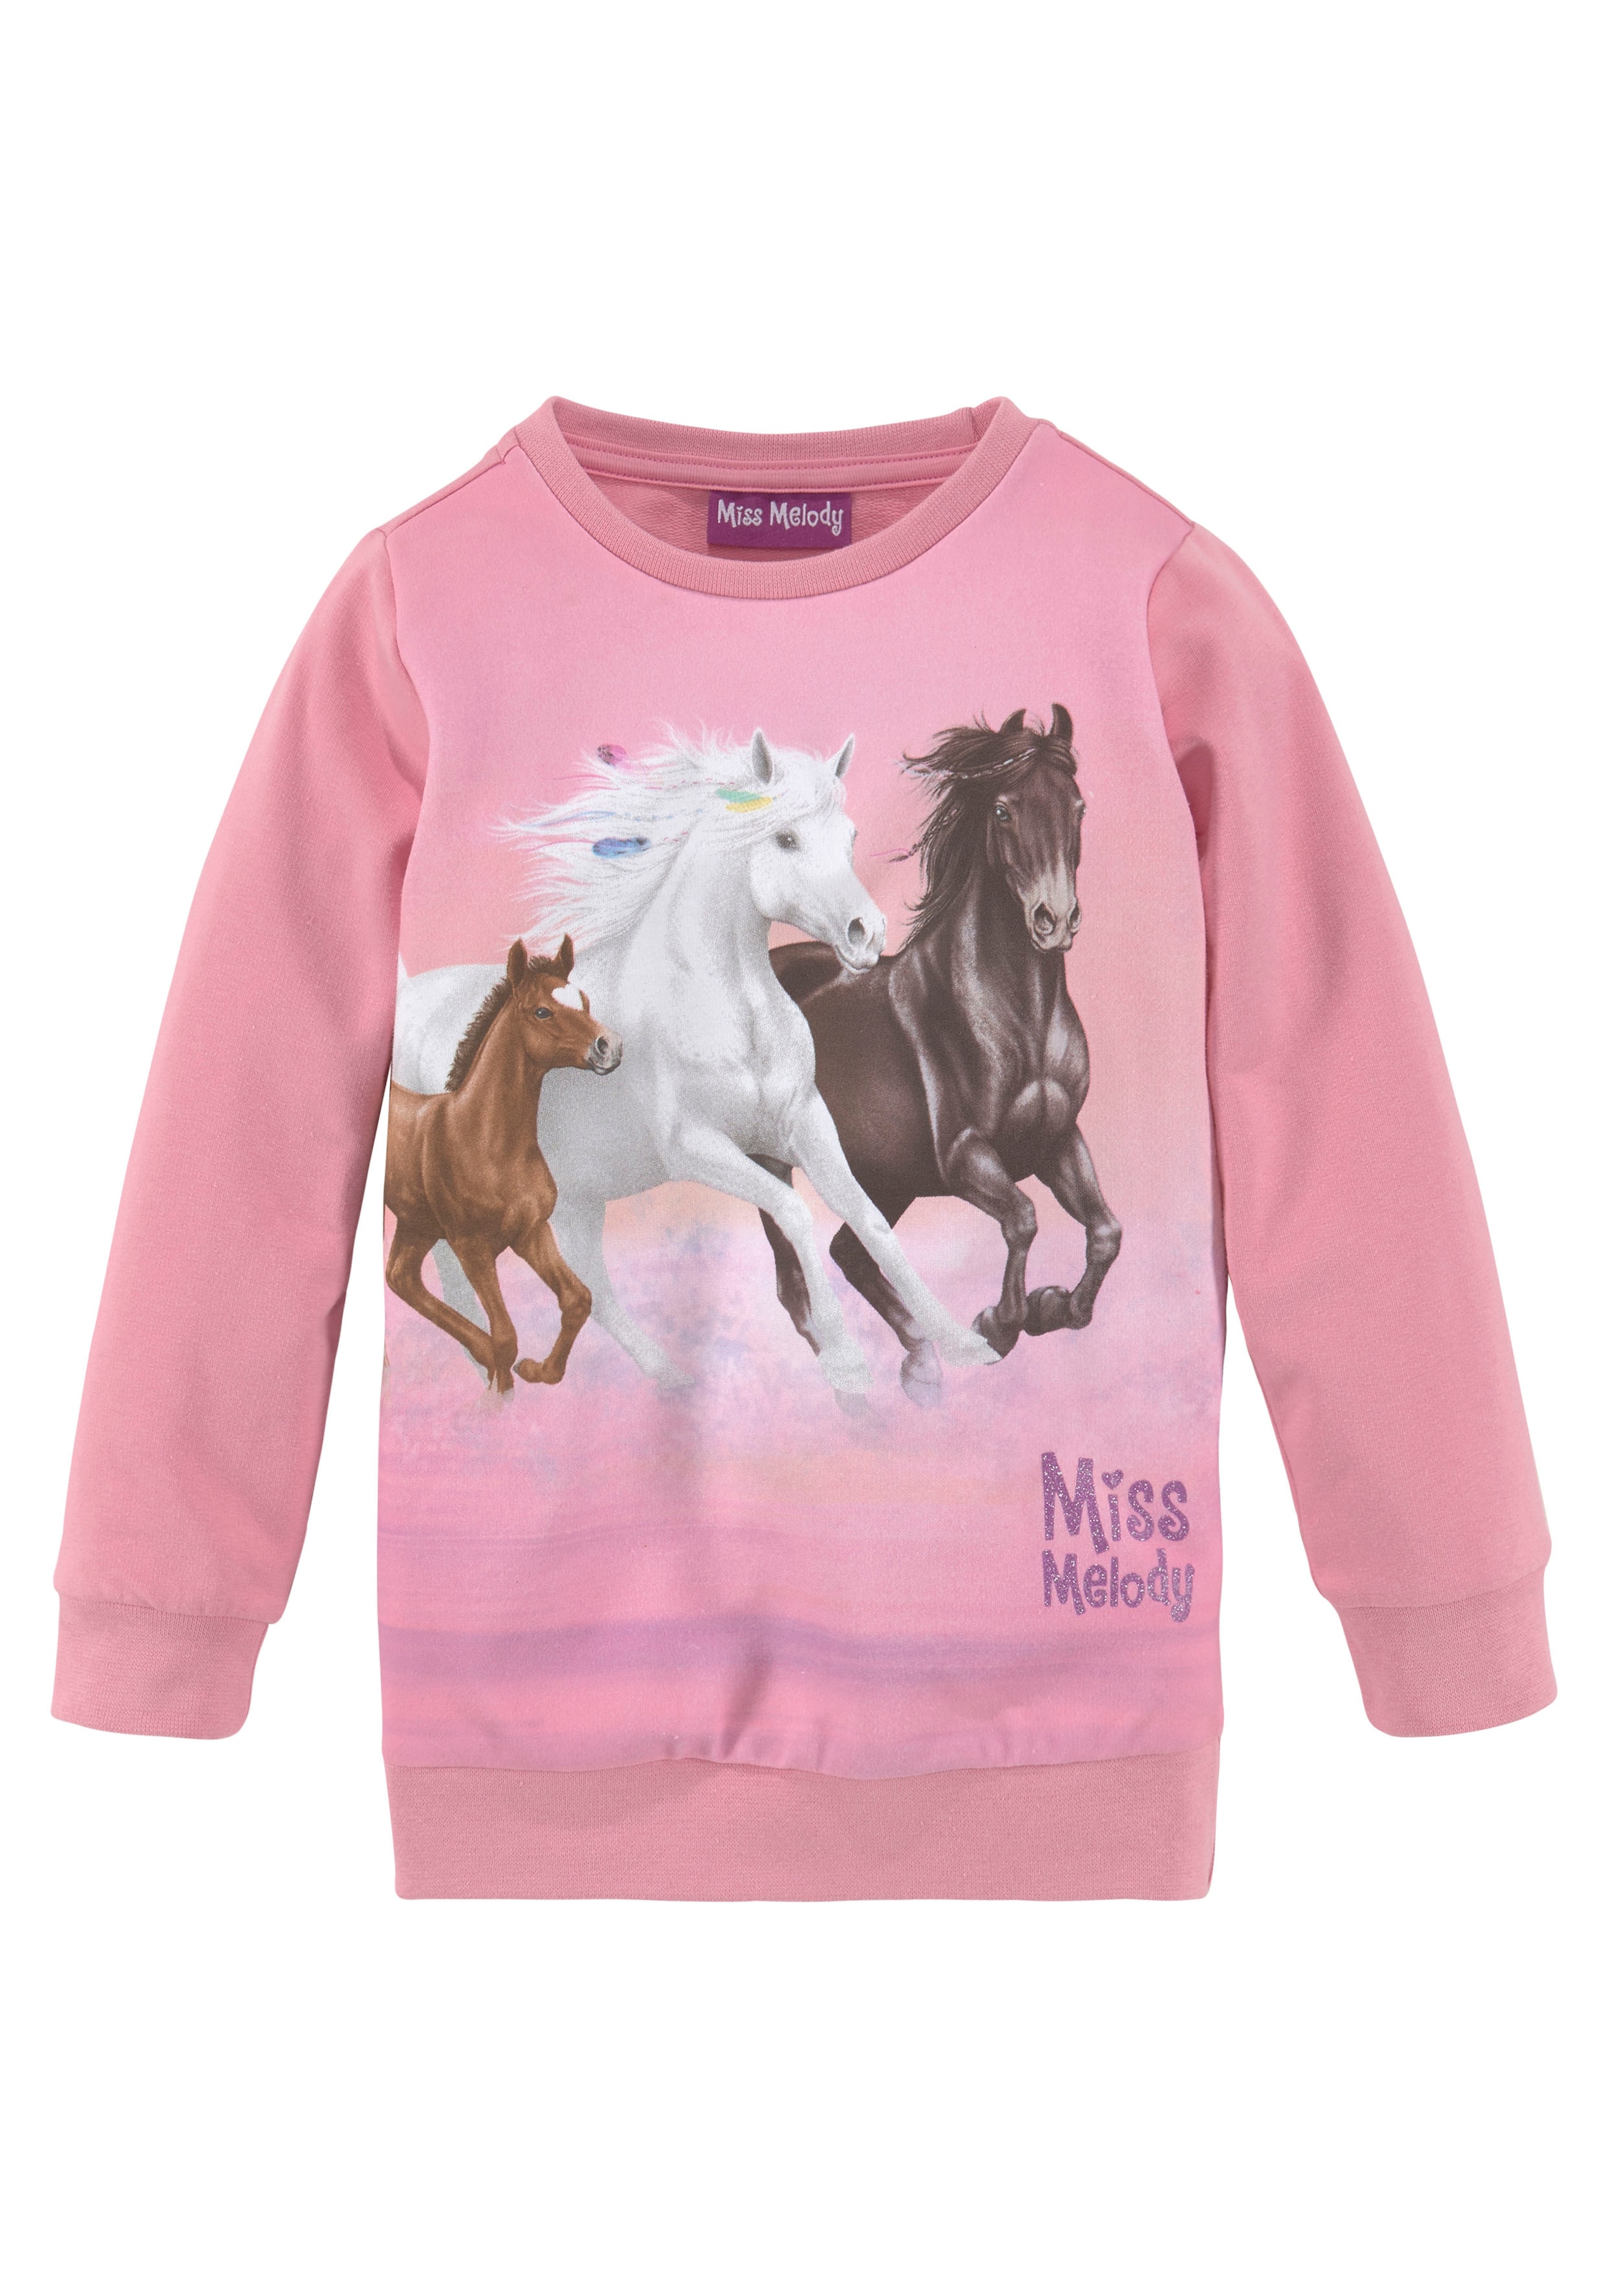 Miss Melody Longsweatshirt, für Pferdefreunde günstig